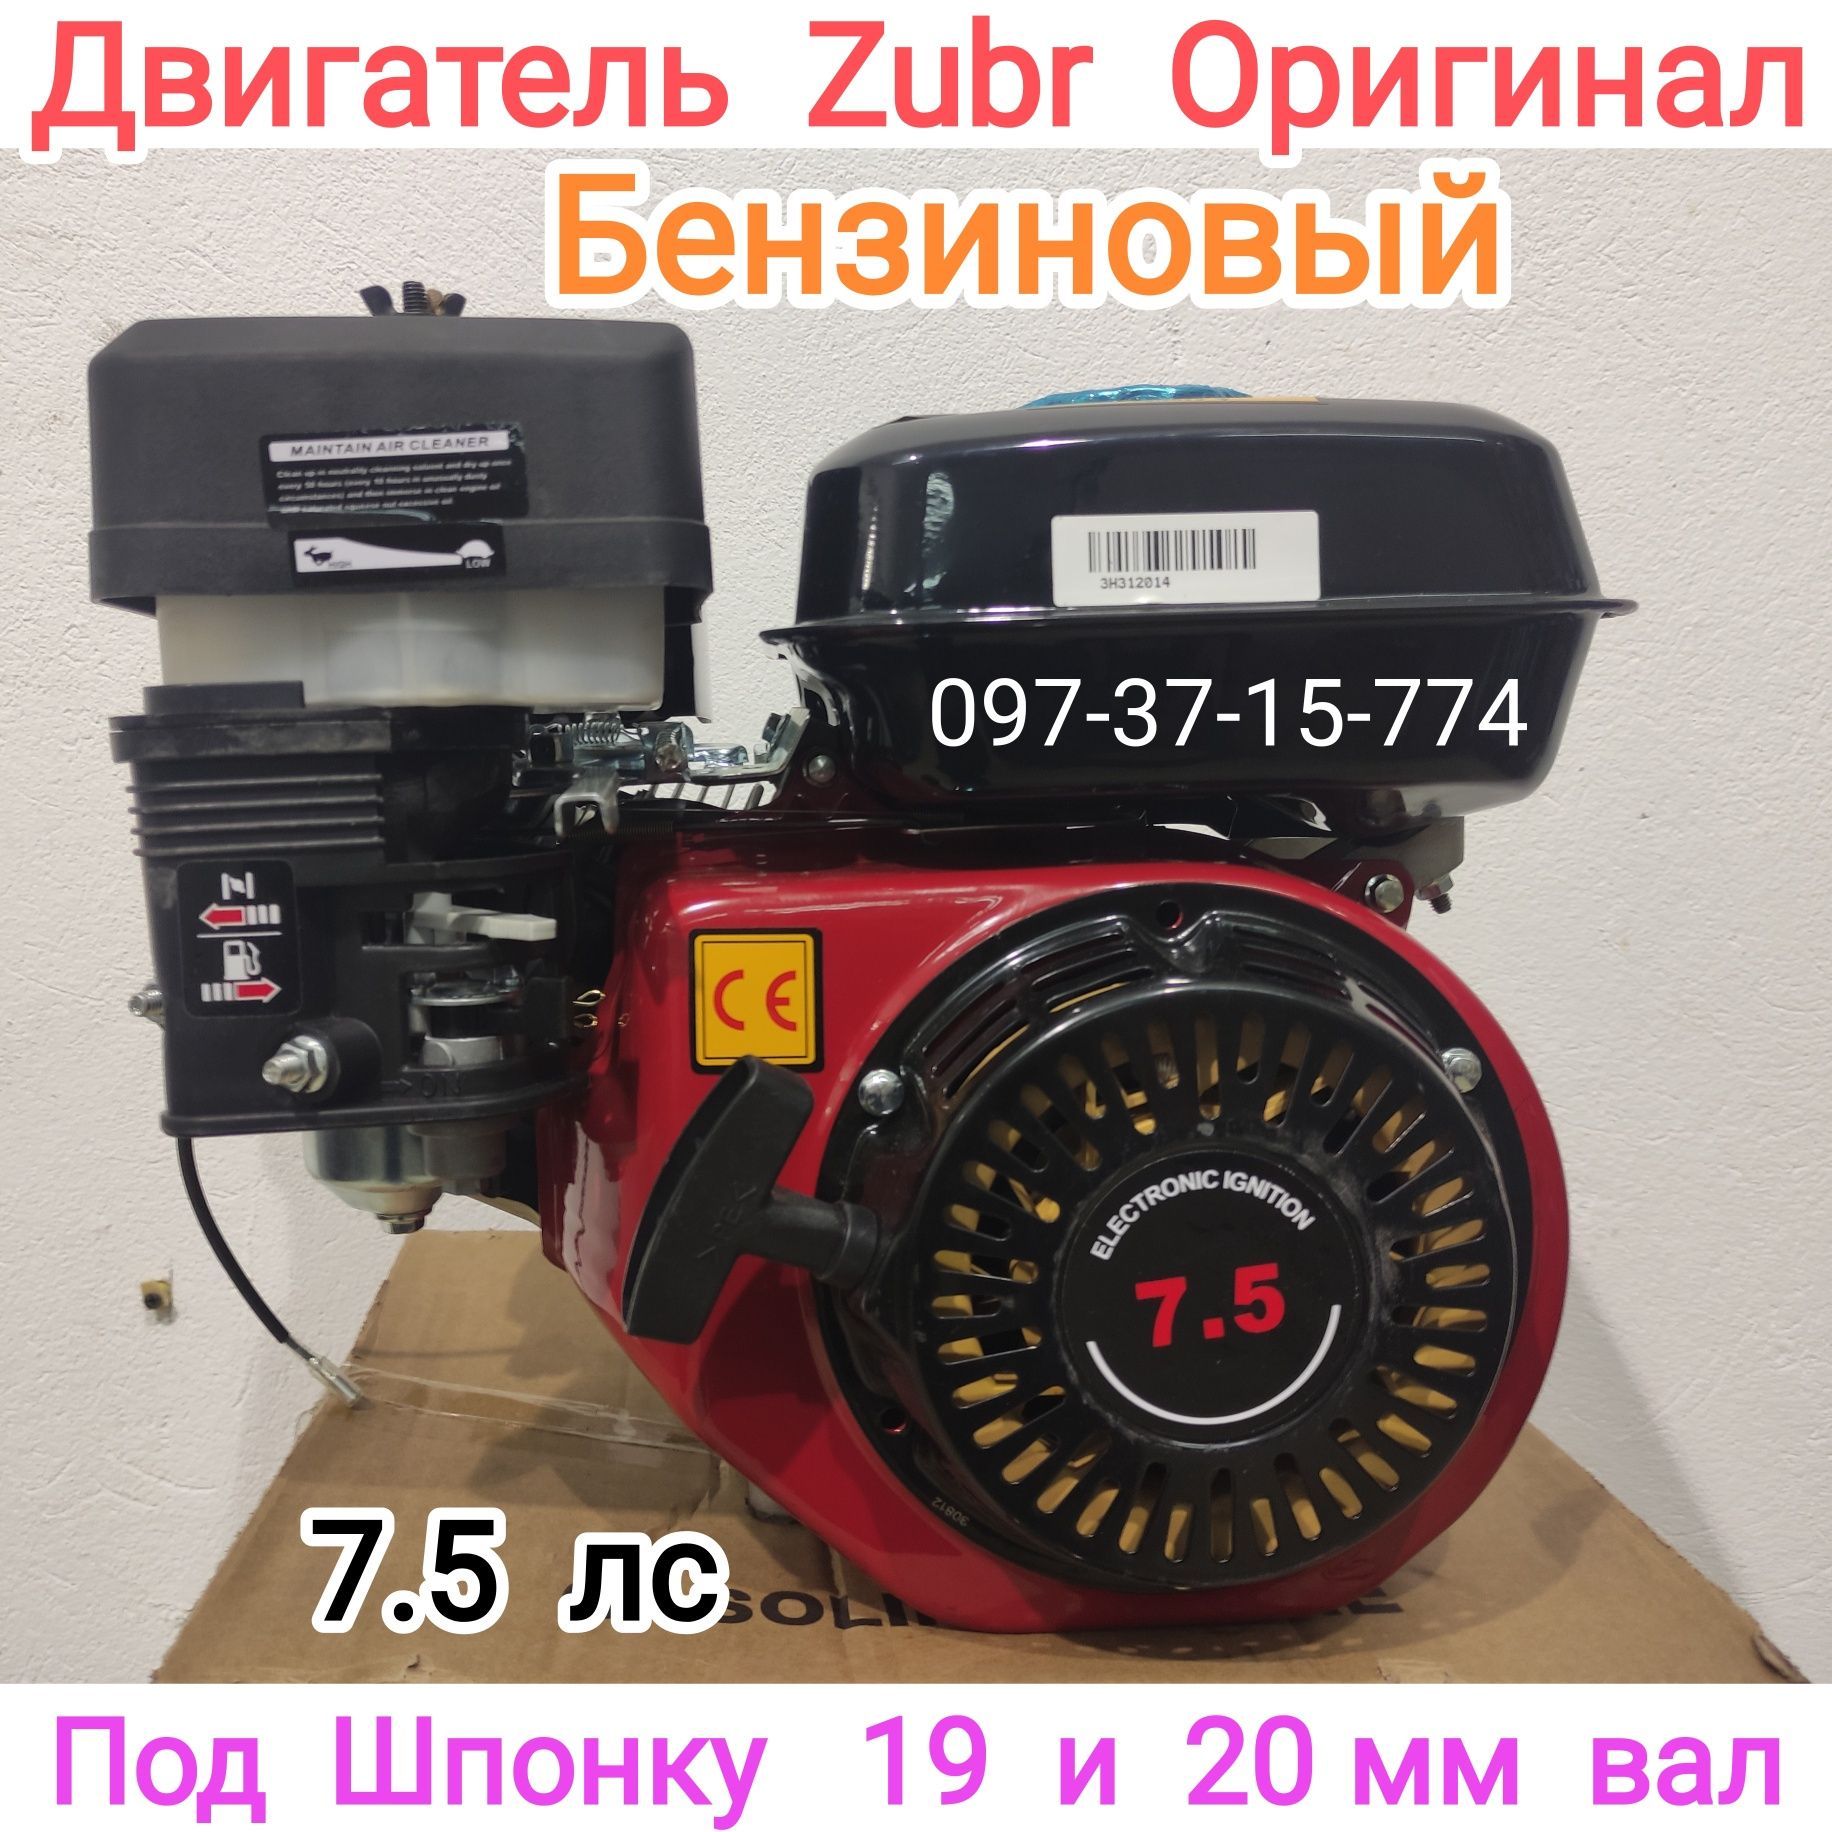 Двигатель Бензиновый Зубр Zubr 170F 7.5 лс 20 вал под шпонку Гарантия